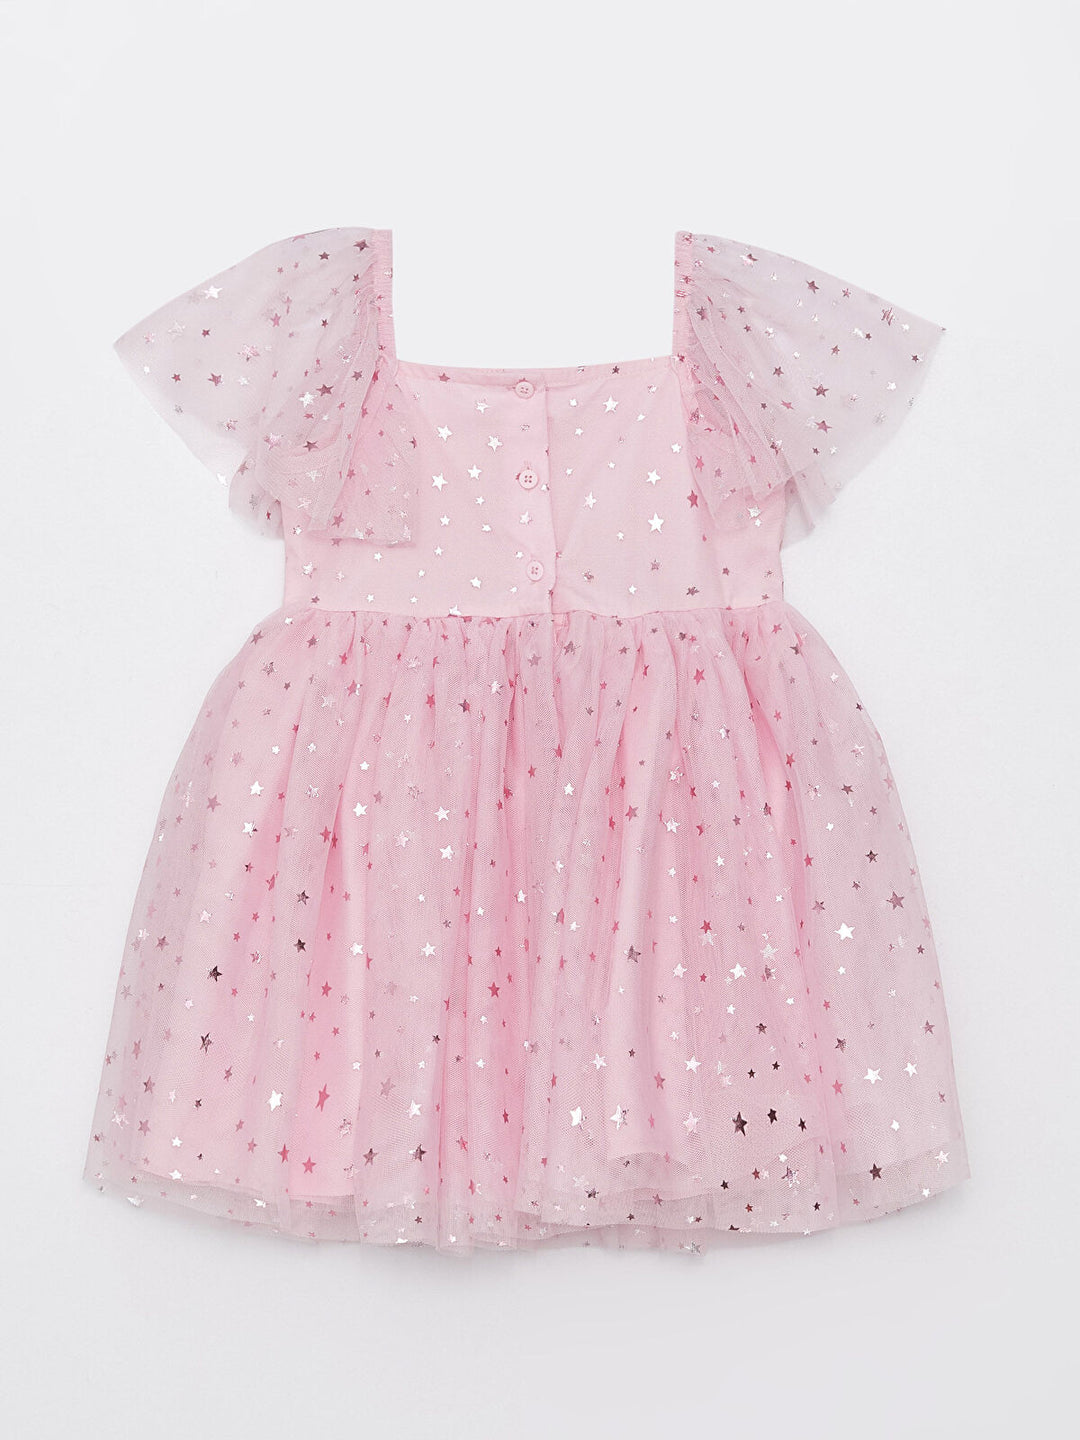 Square Neck Short Sleeve Printed Tulle Skirt Baby Girl Dress